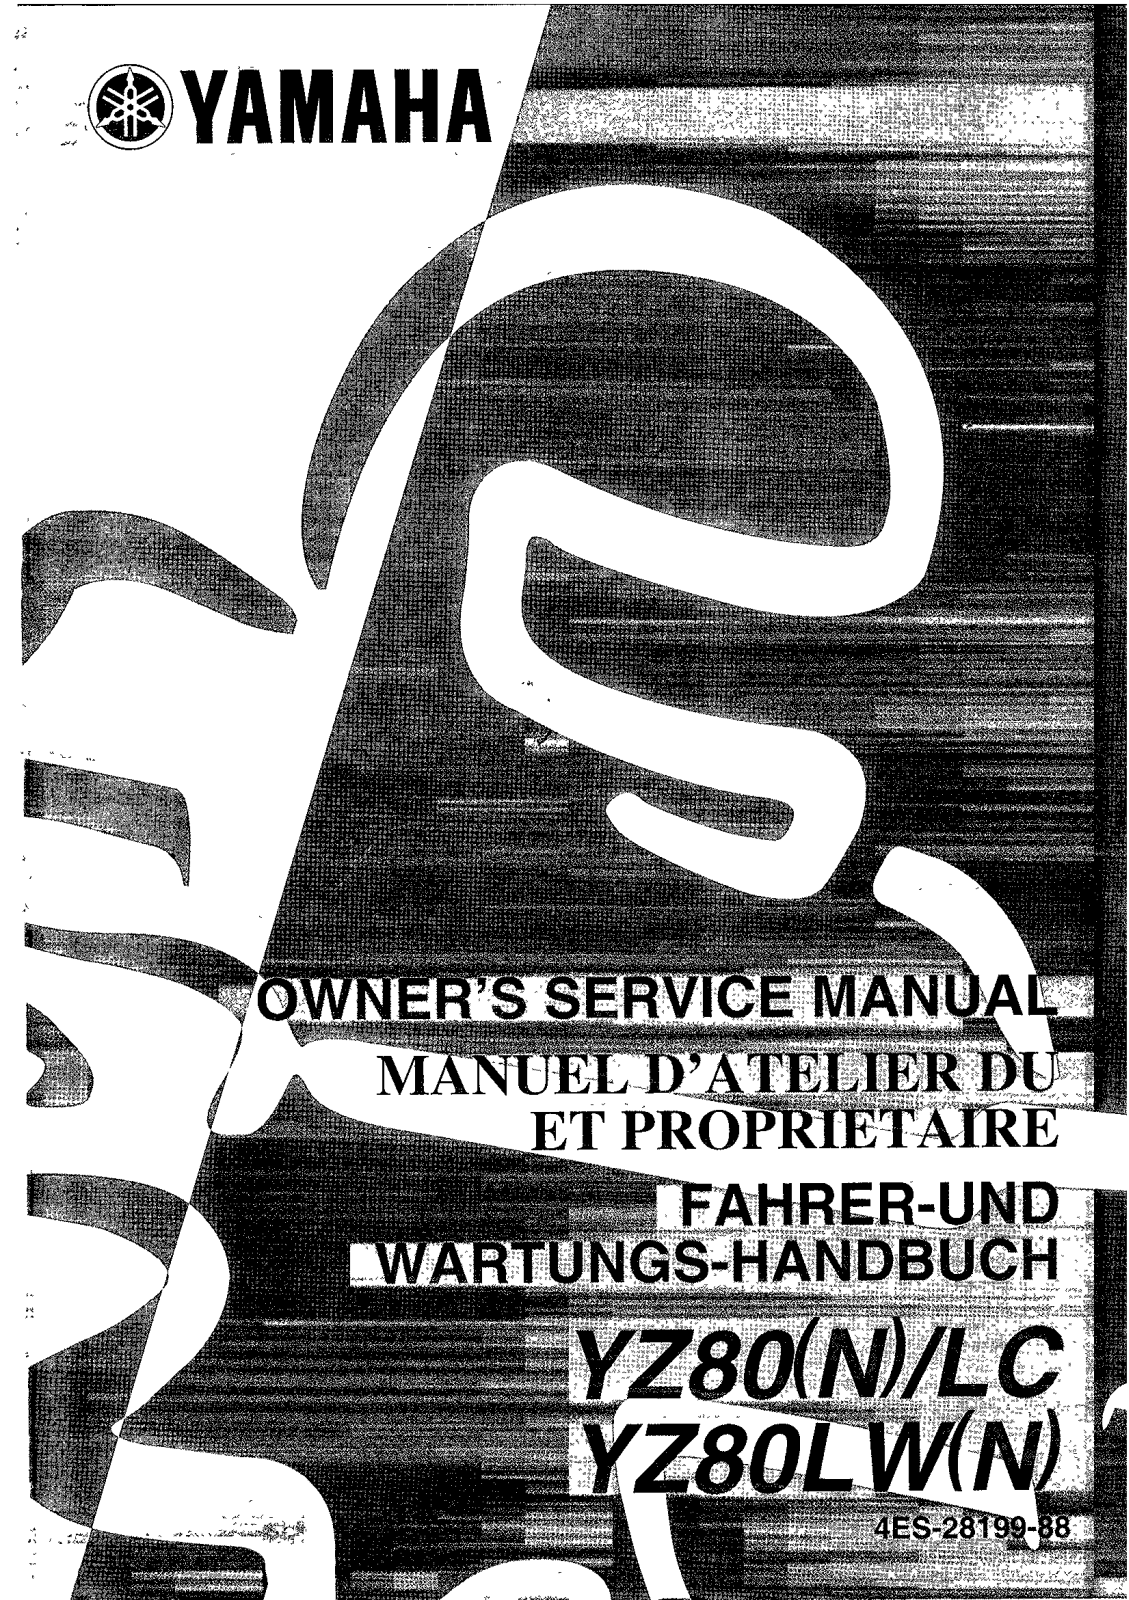 Yamaha YZ80 (N) LC Or LW (N) 2001 Owner's manual